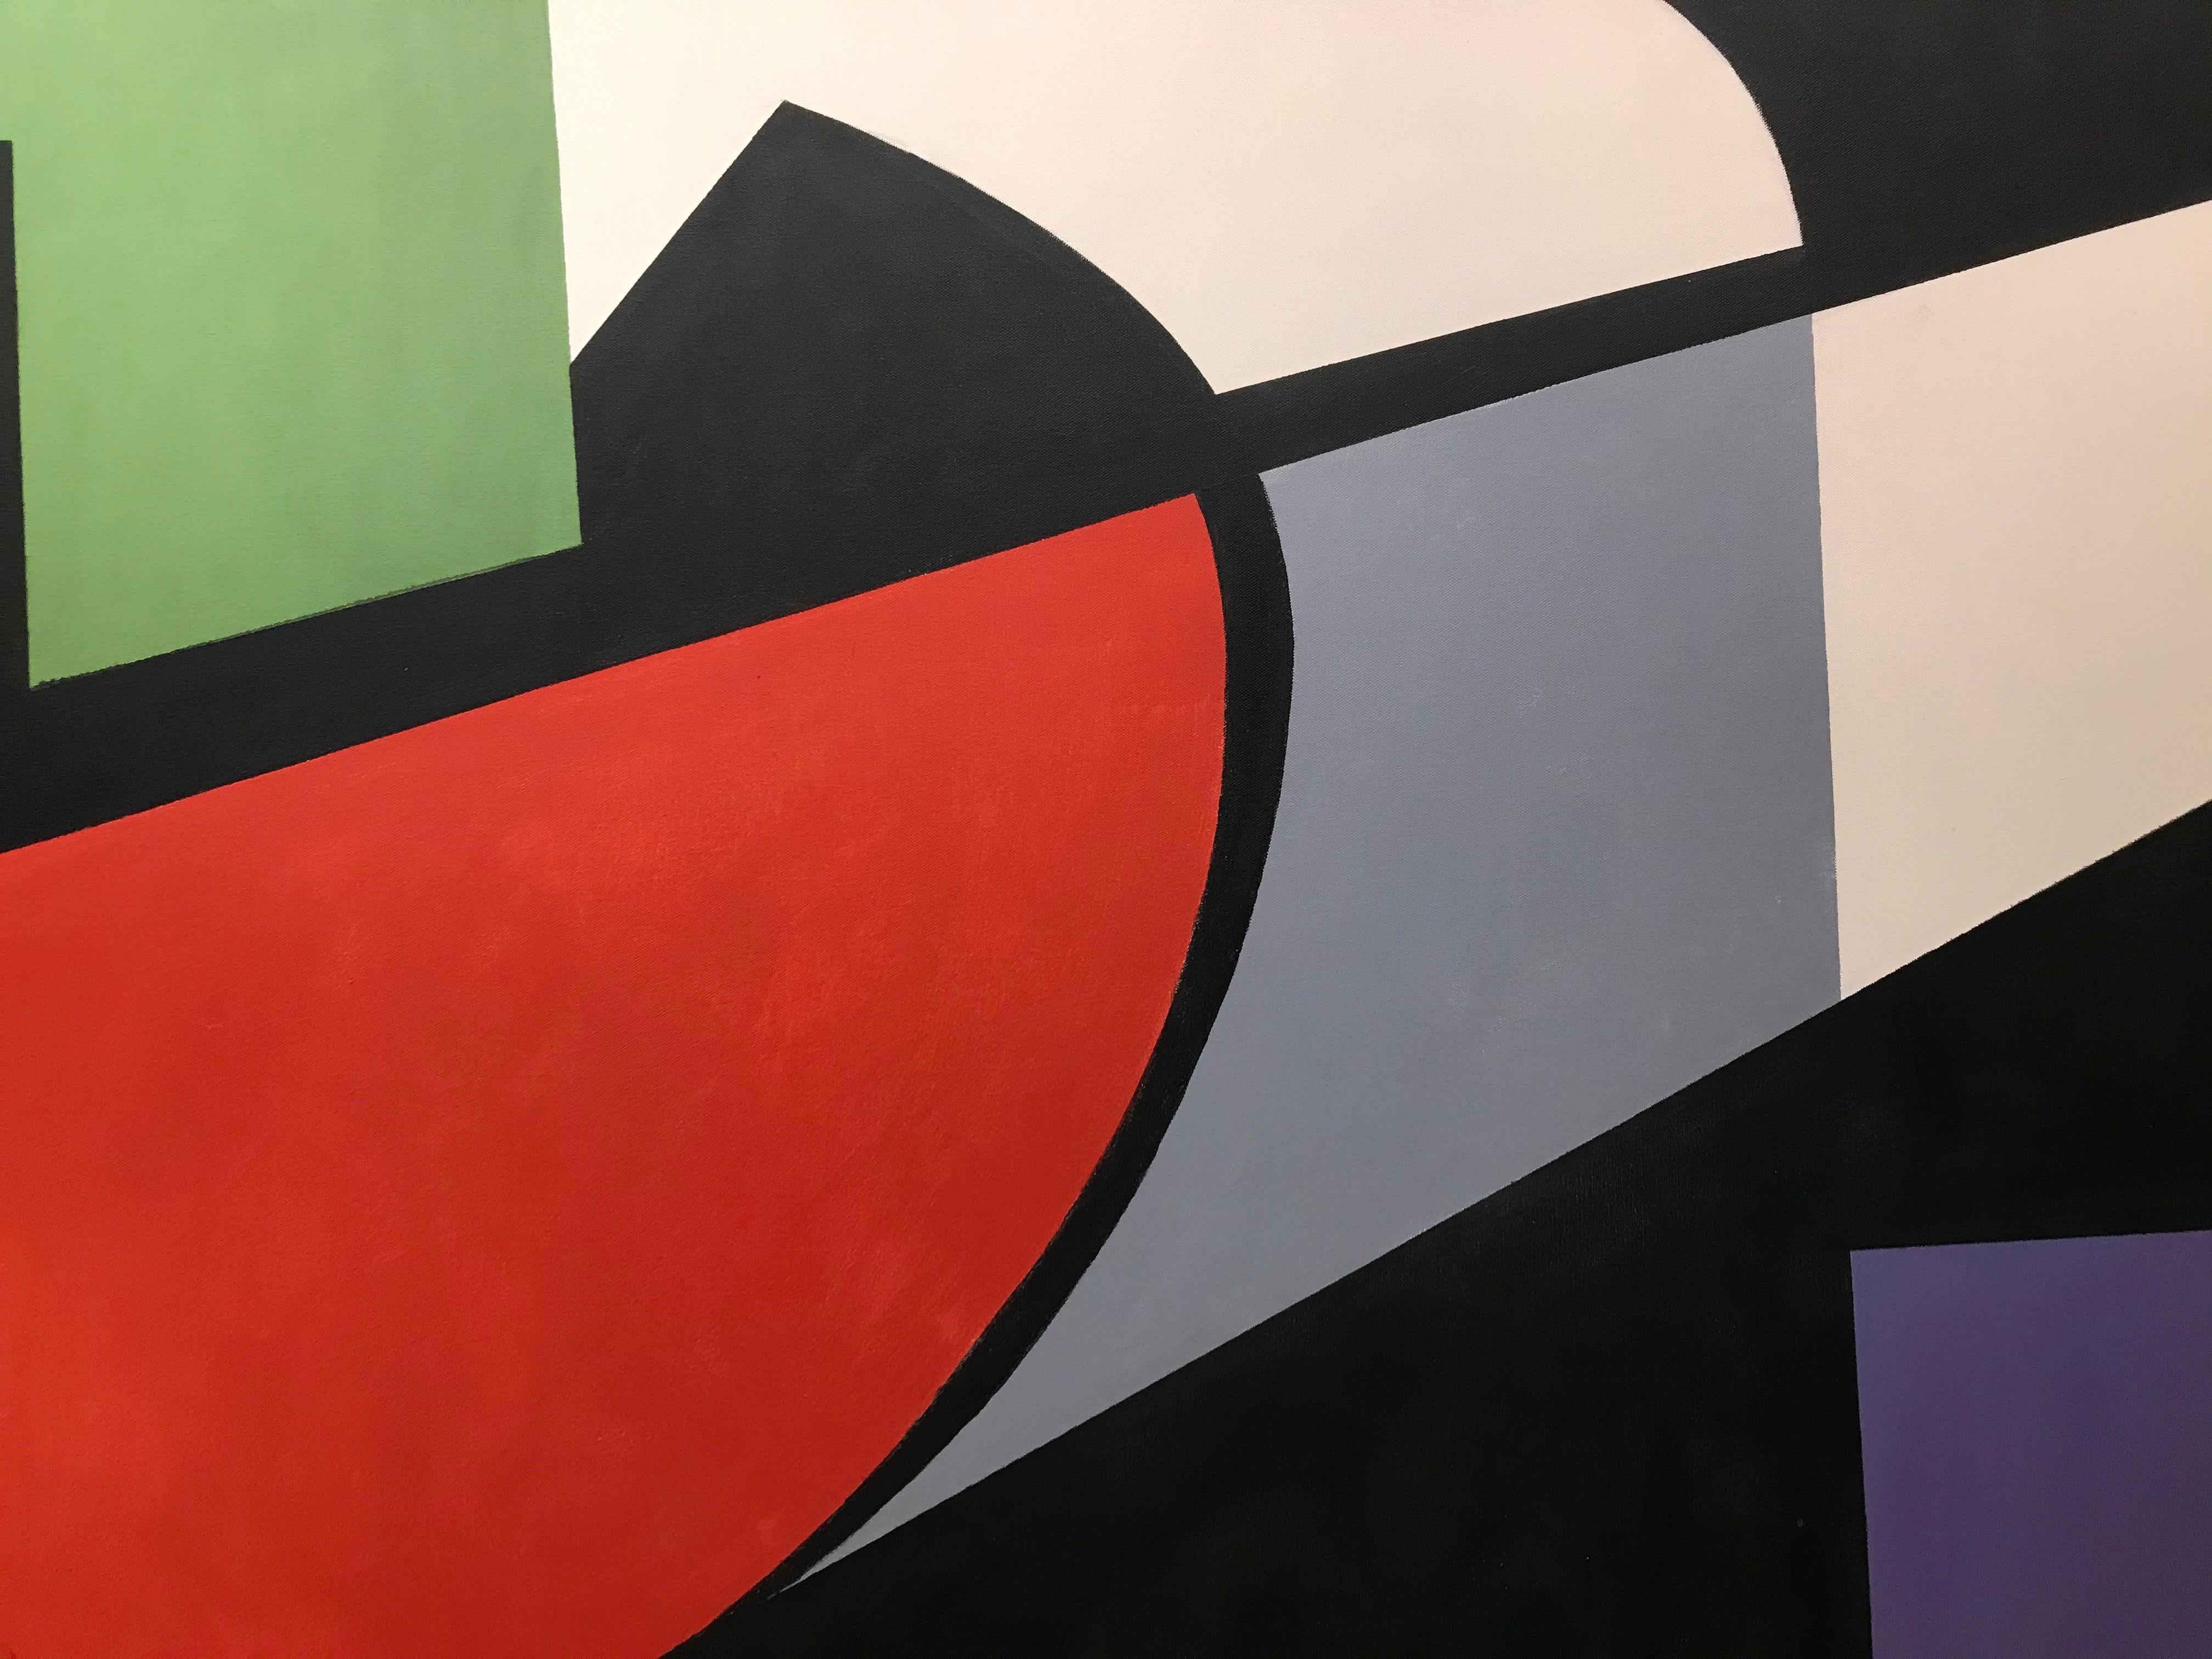 La peinture à bords francs est une approche de la peinture abstraite qui s'est répandue dans les années 1960 et qui se caractérise par des aplats de couleurs aux bords nets et tranchants (ou 